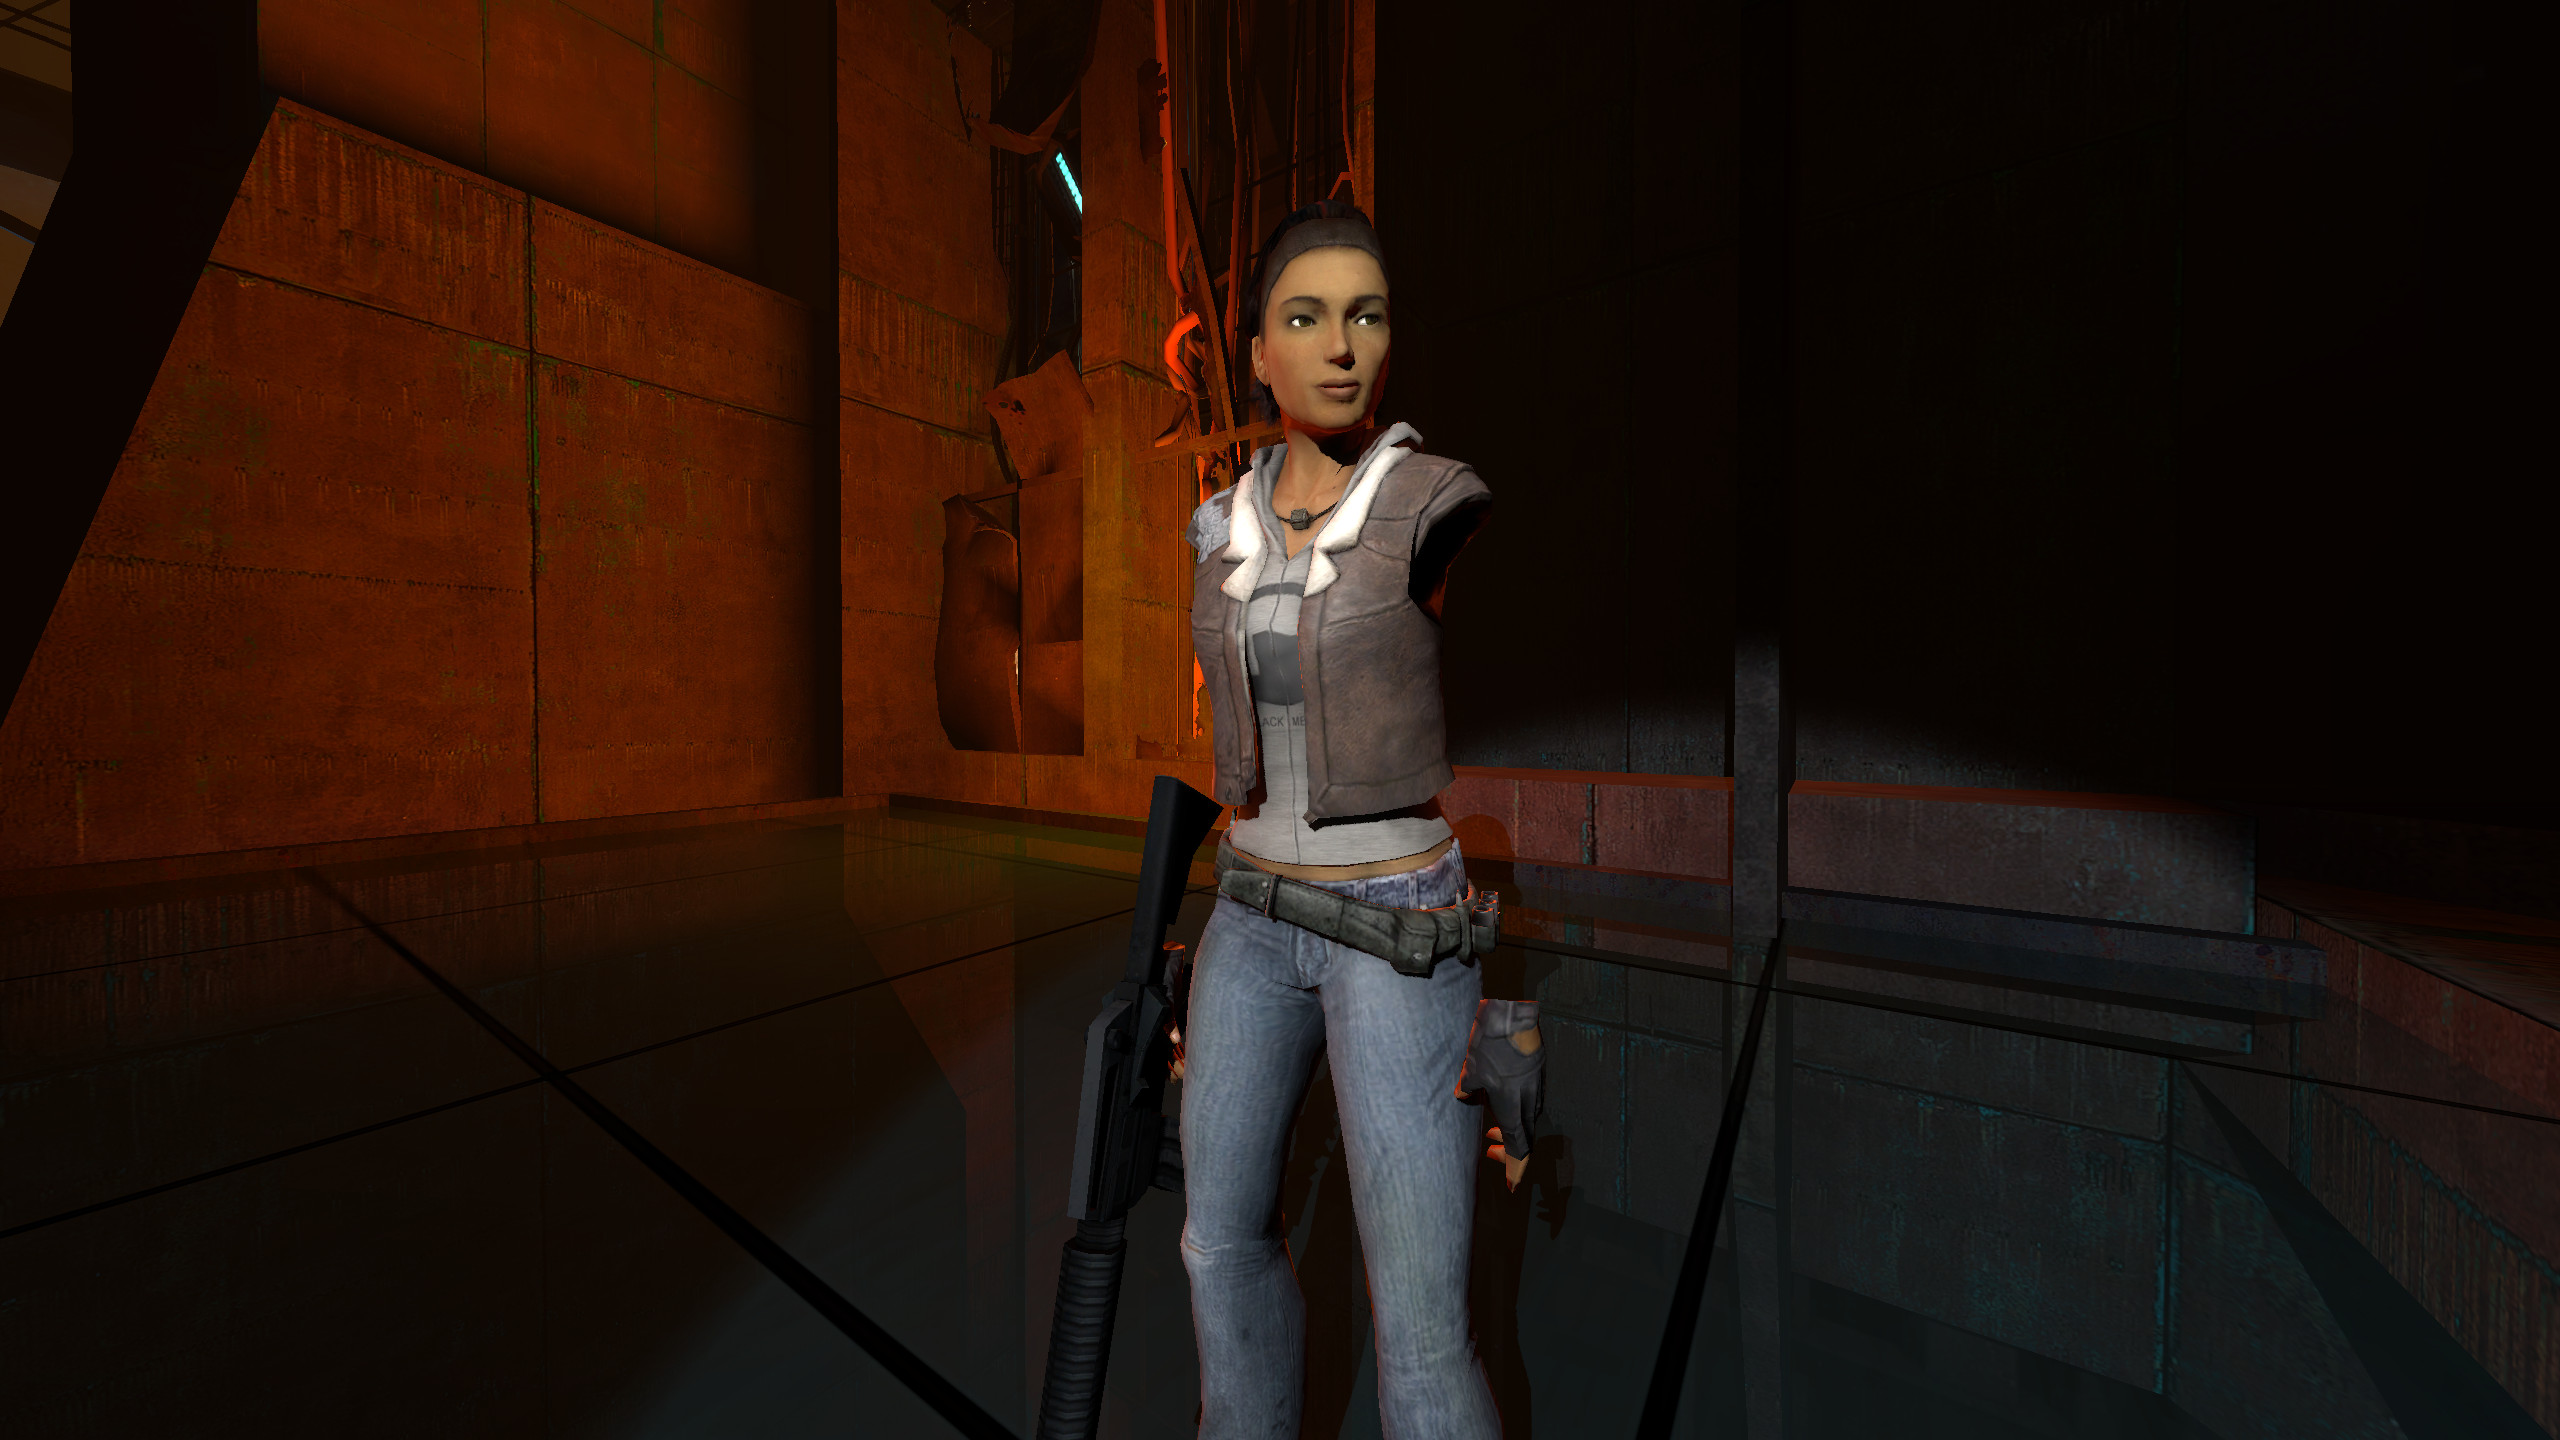 Half-Life: Alyx themed Alyx addon - ModDB